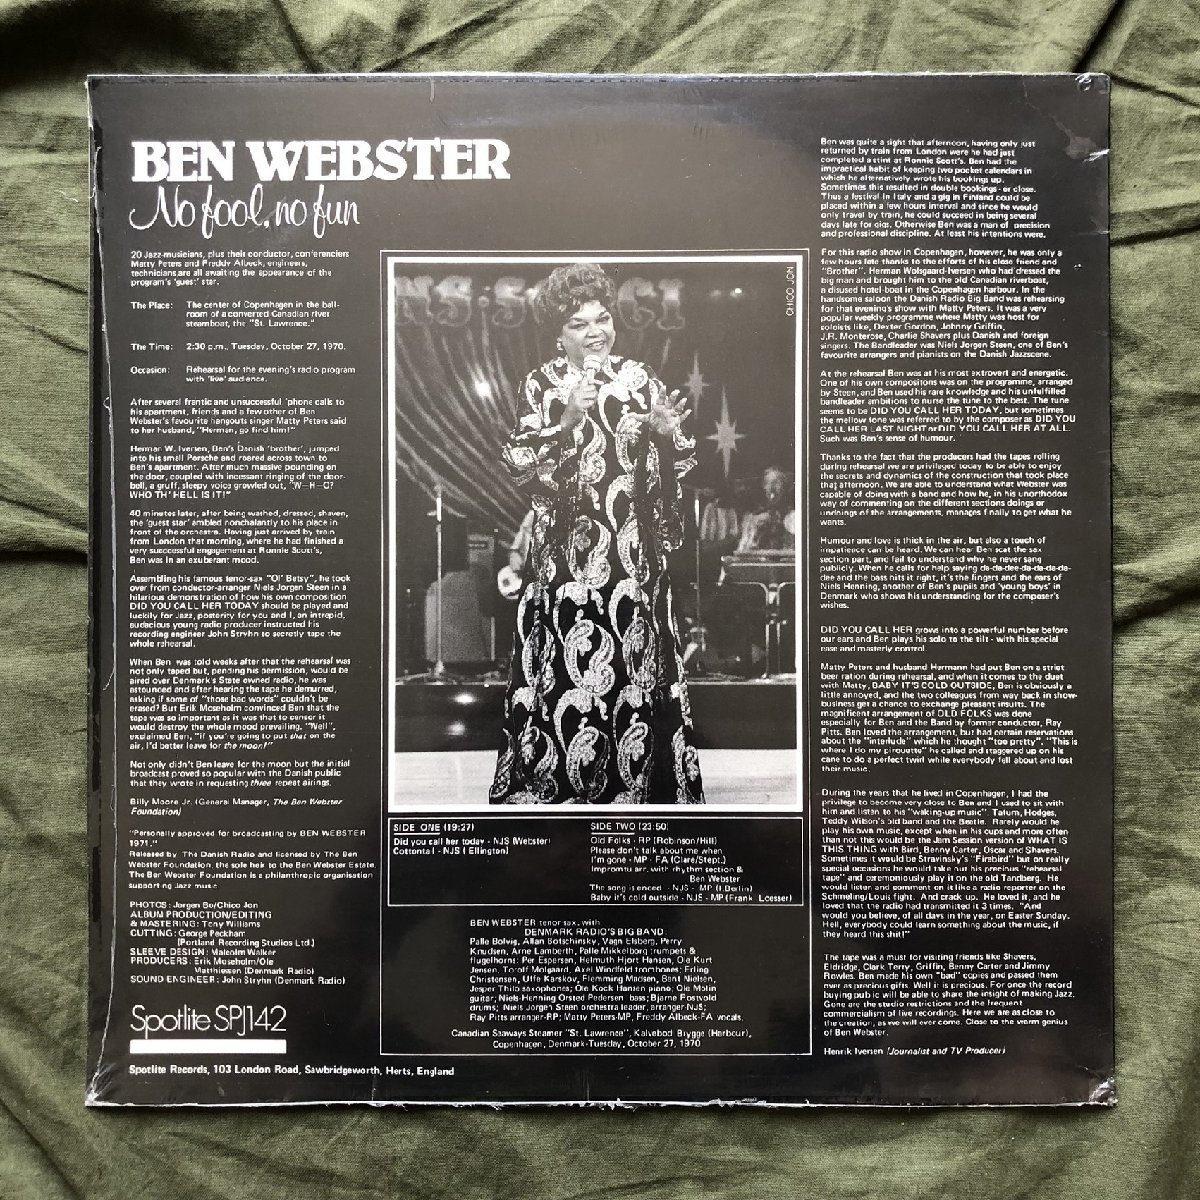 原信夫Collection 未開封新品 超貴重盤 デッドストック 1978年 英国盤 オリジナルリリース盤 Ben Webstar LPレコード No Fool, No Fun_画像2